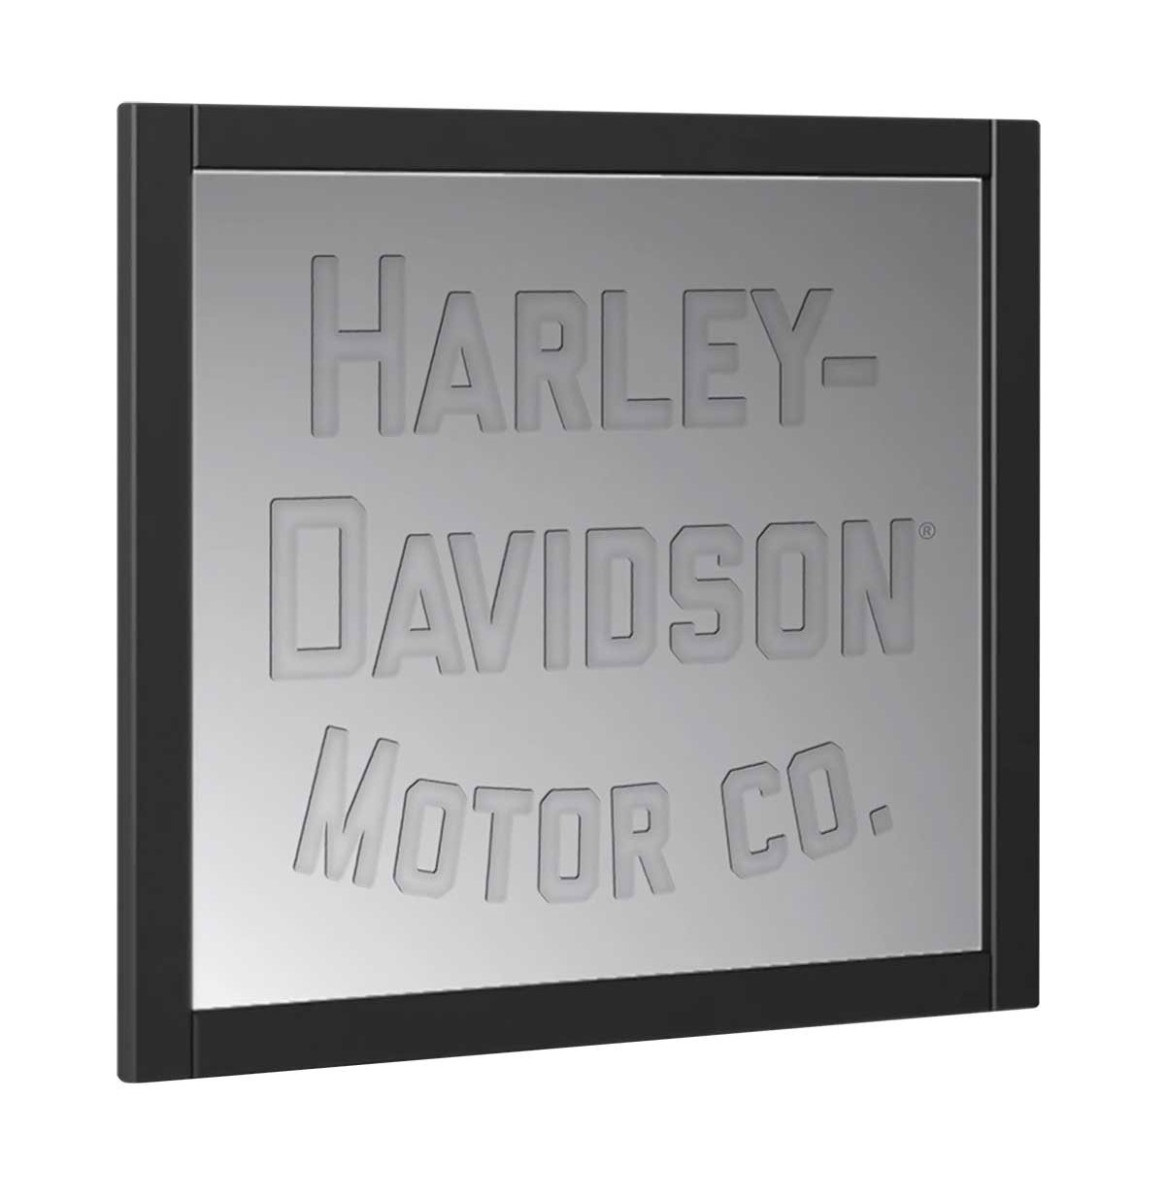 Harley-Davidson Motor Co. Spiegel